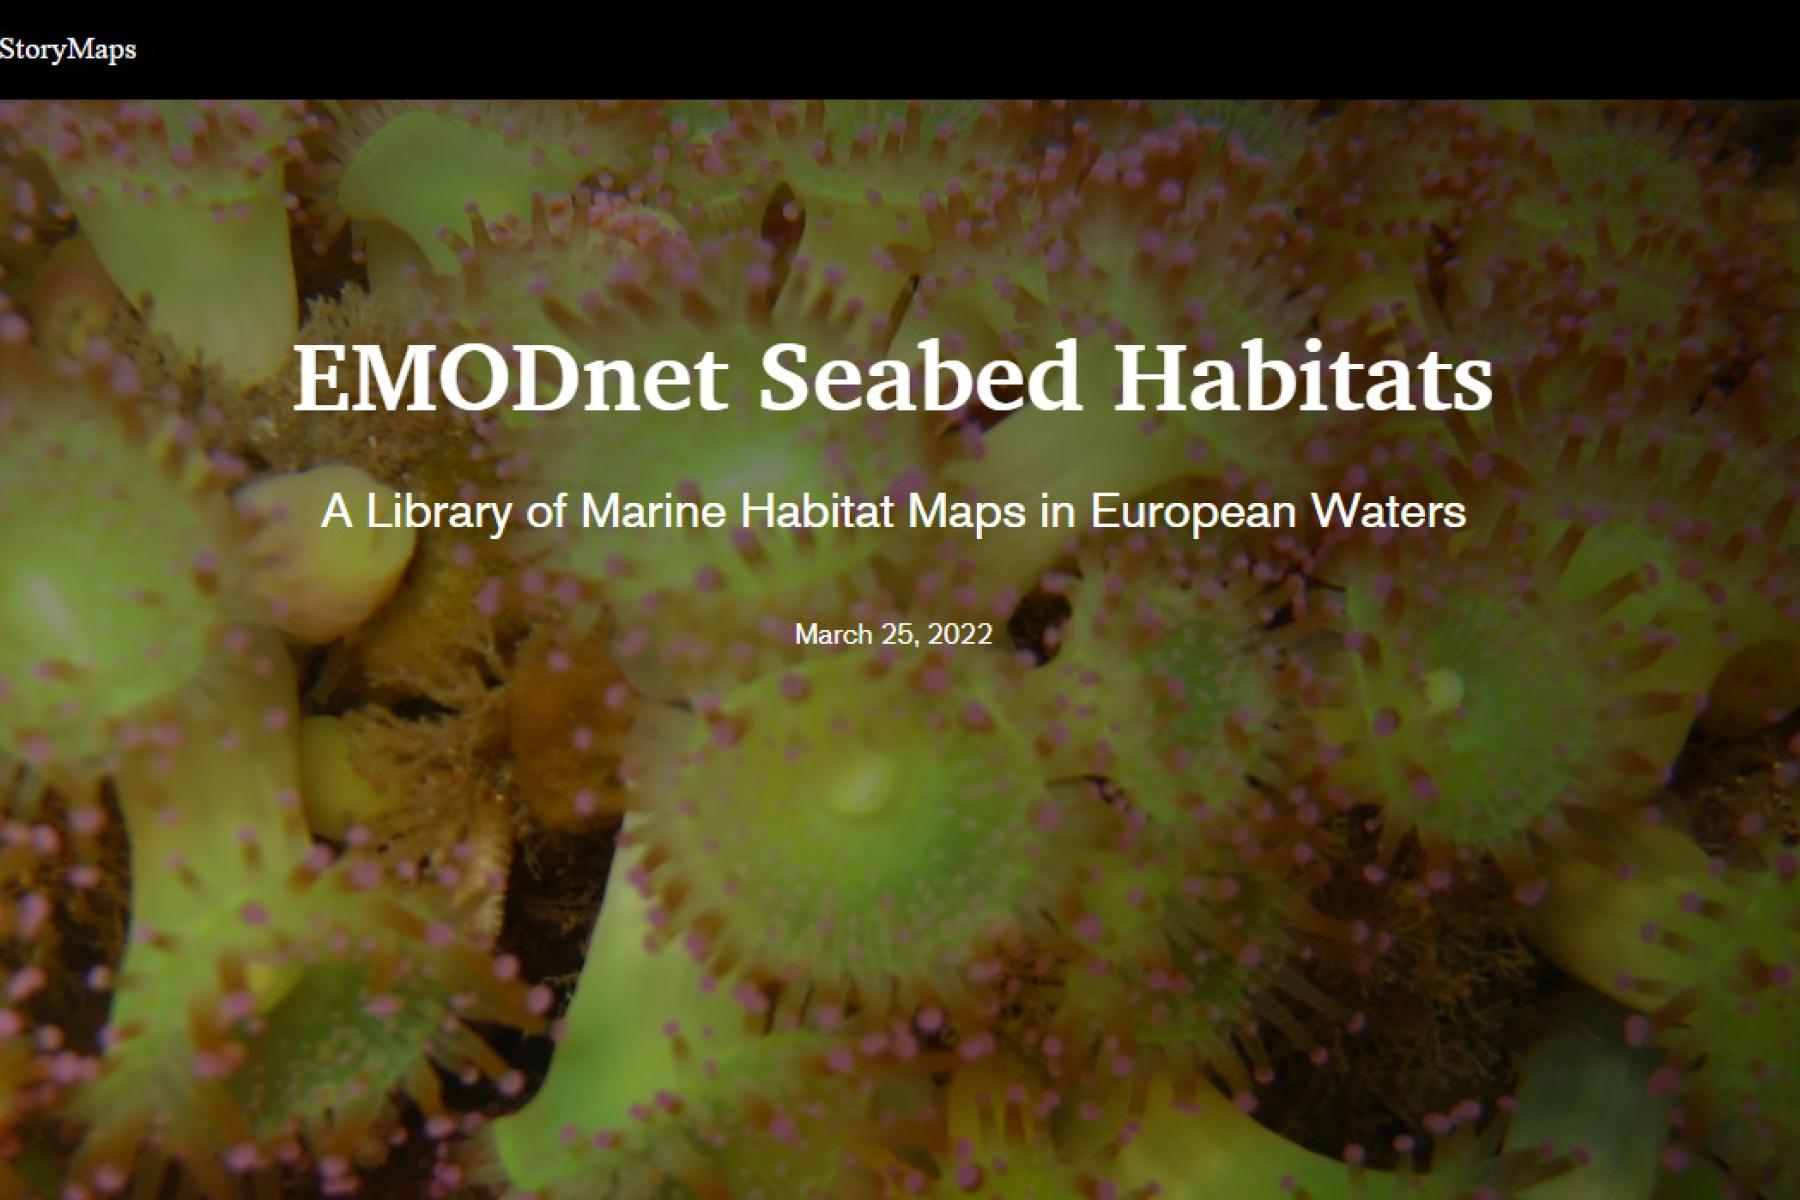 EMODnet Seabed Habitats story map. ©EMODnet